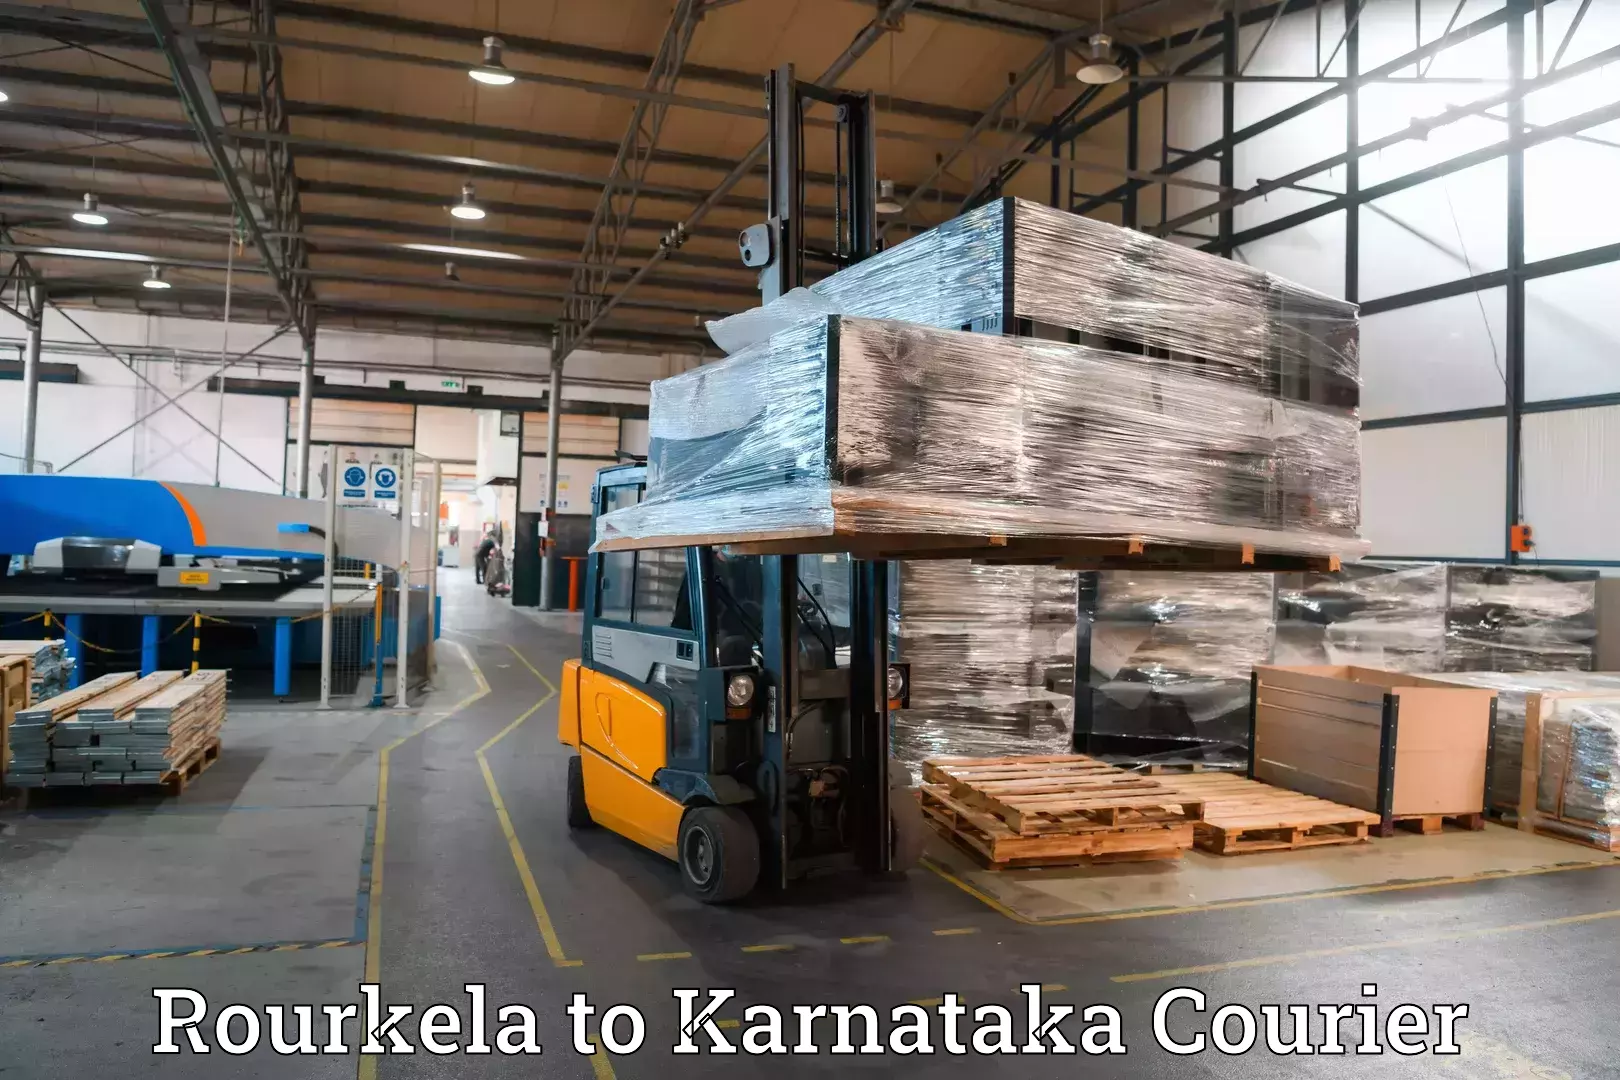 Baggage transport network Rourkela to Karnataka